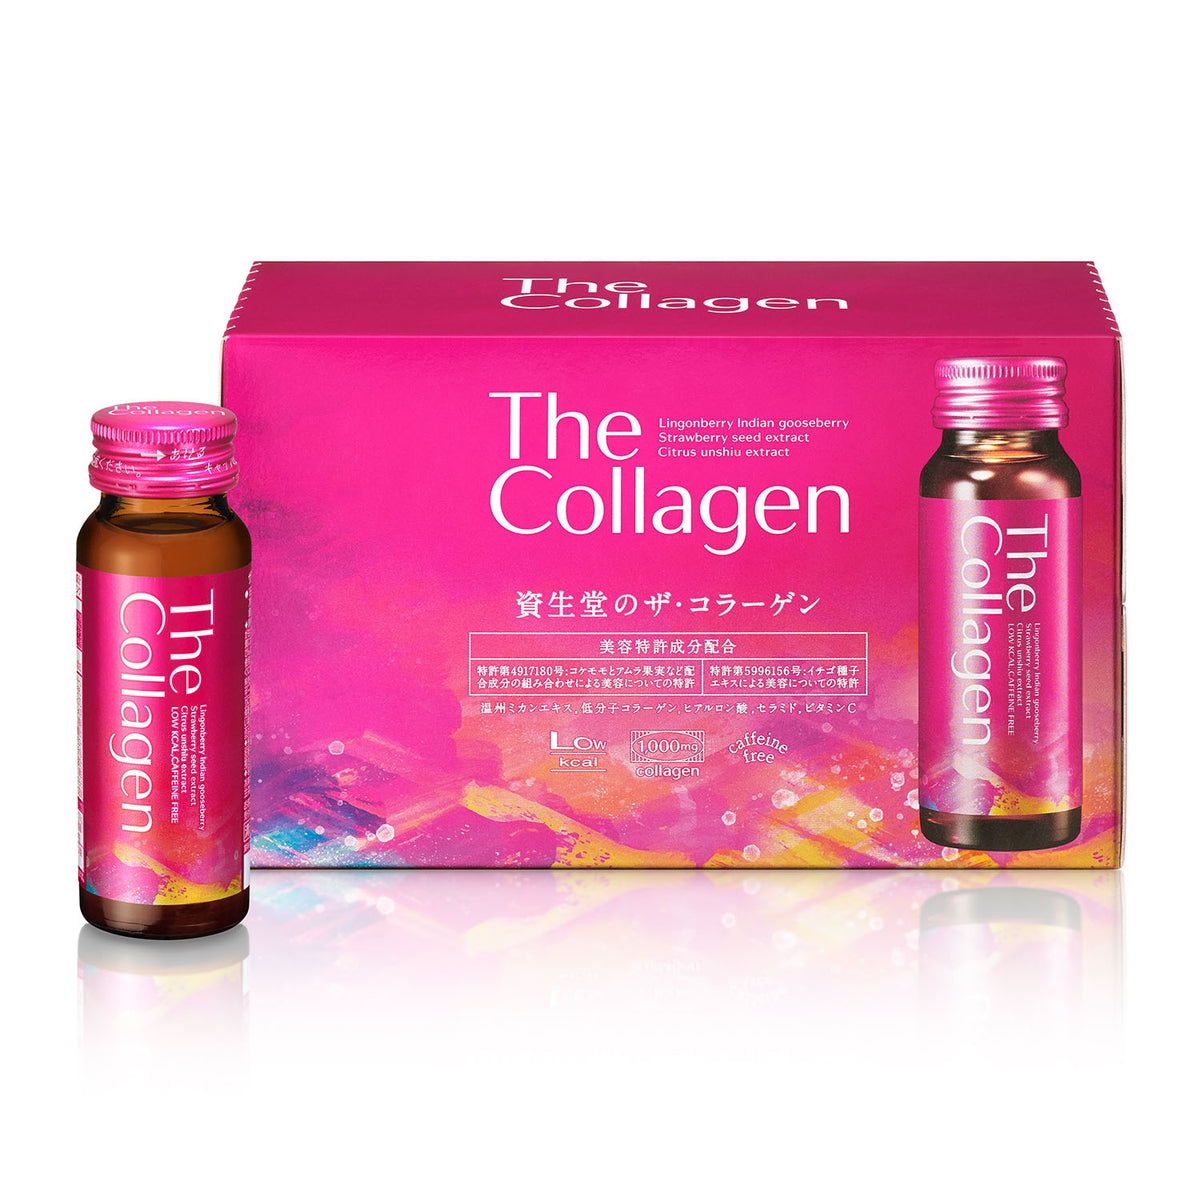 Sản phẩm collagen beauty drink của đức có dạng uống như thế nào?
